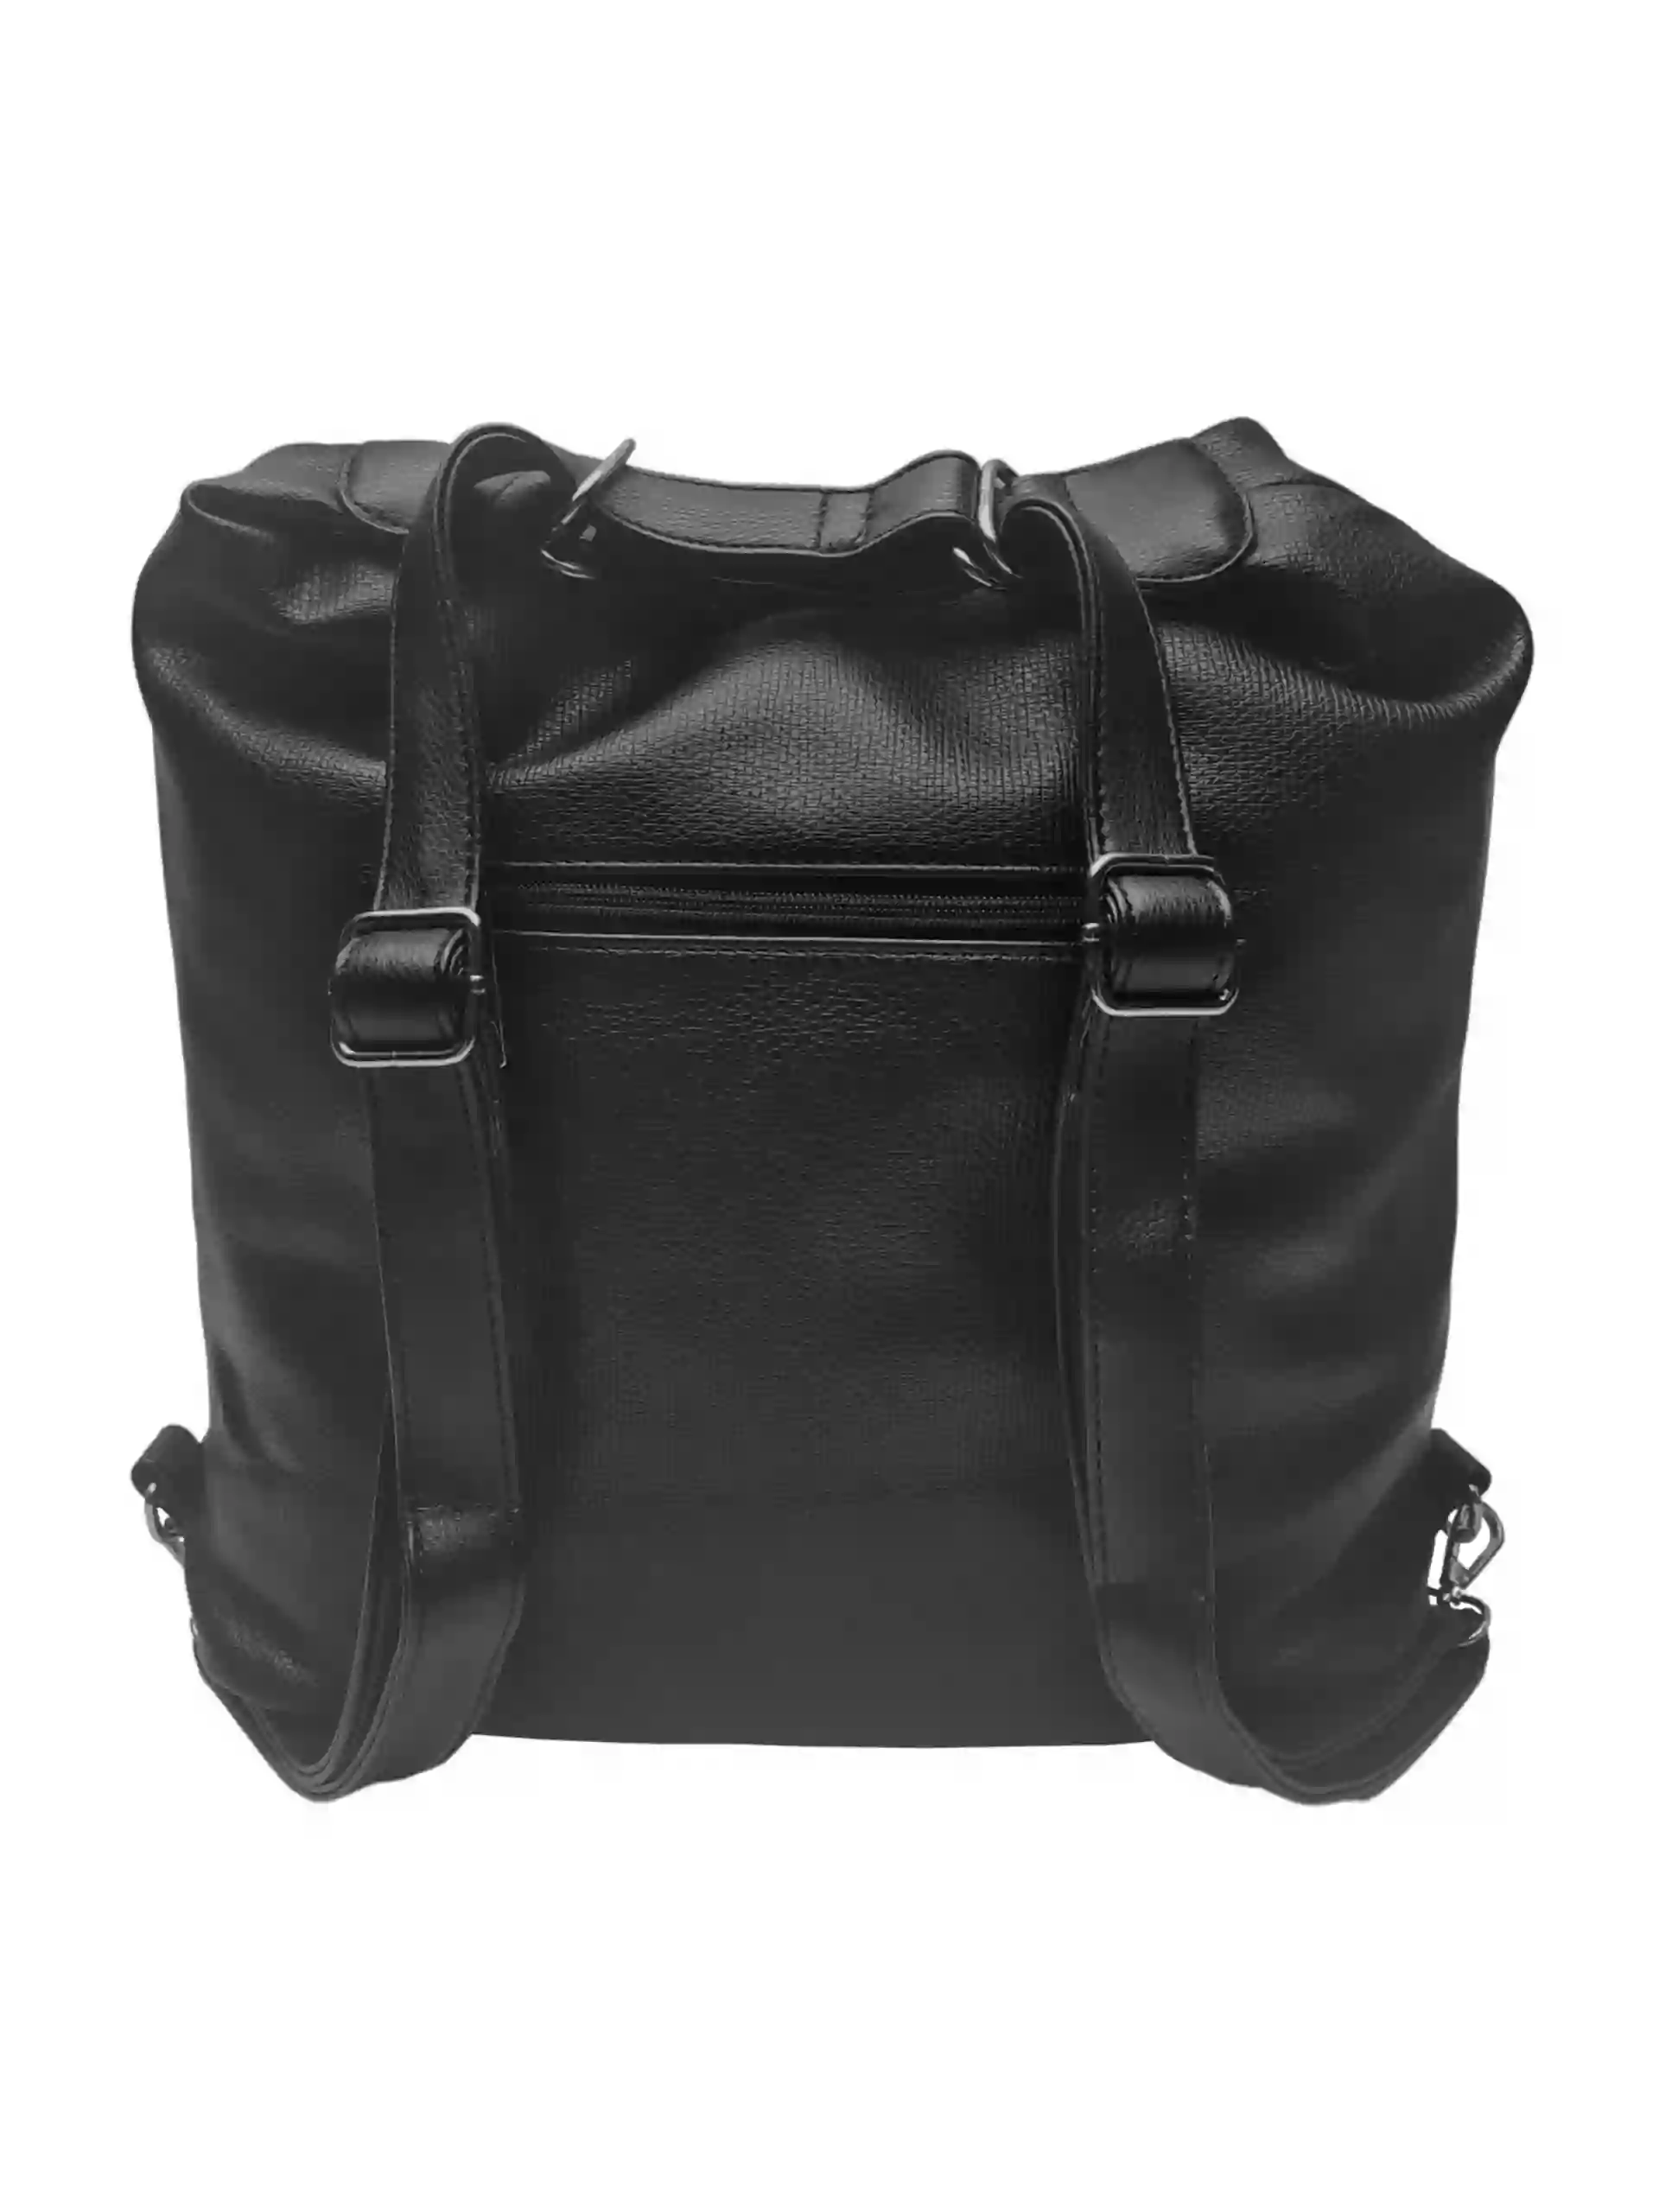 Velký černý kabelko-batoh s kapsami, Tapple, H181175N2, zadní strana kabelko-batohu s popruhy